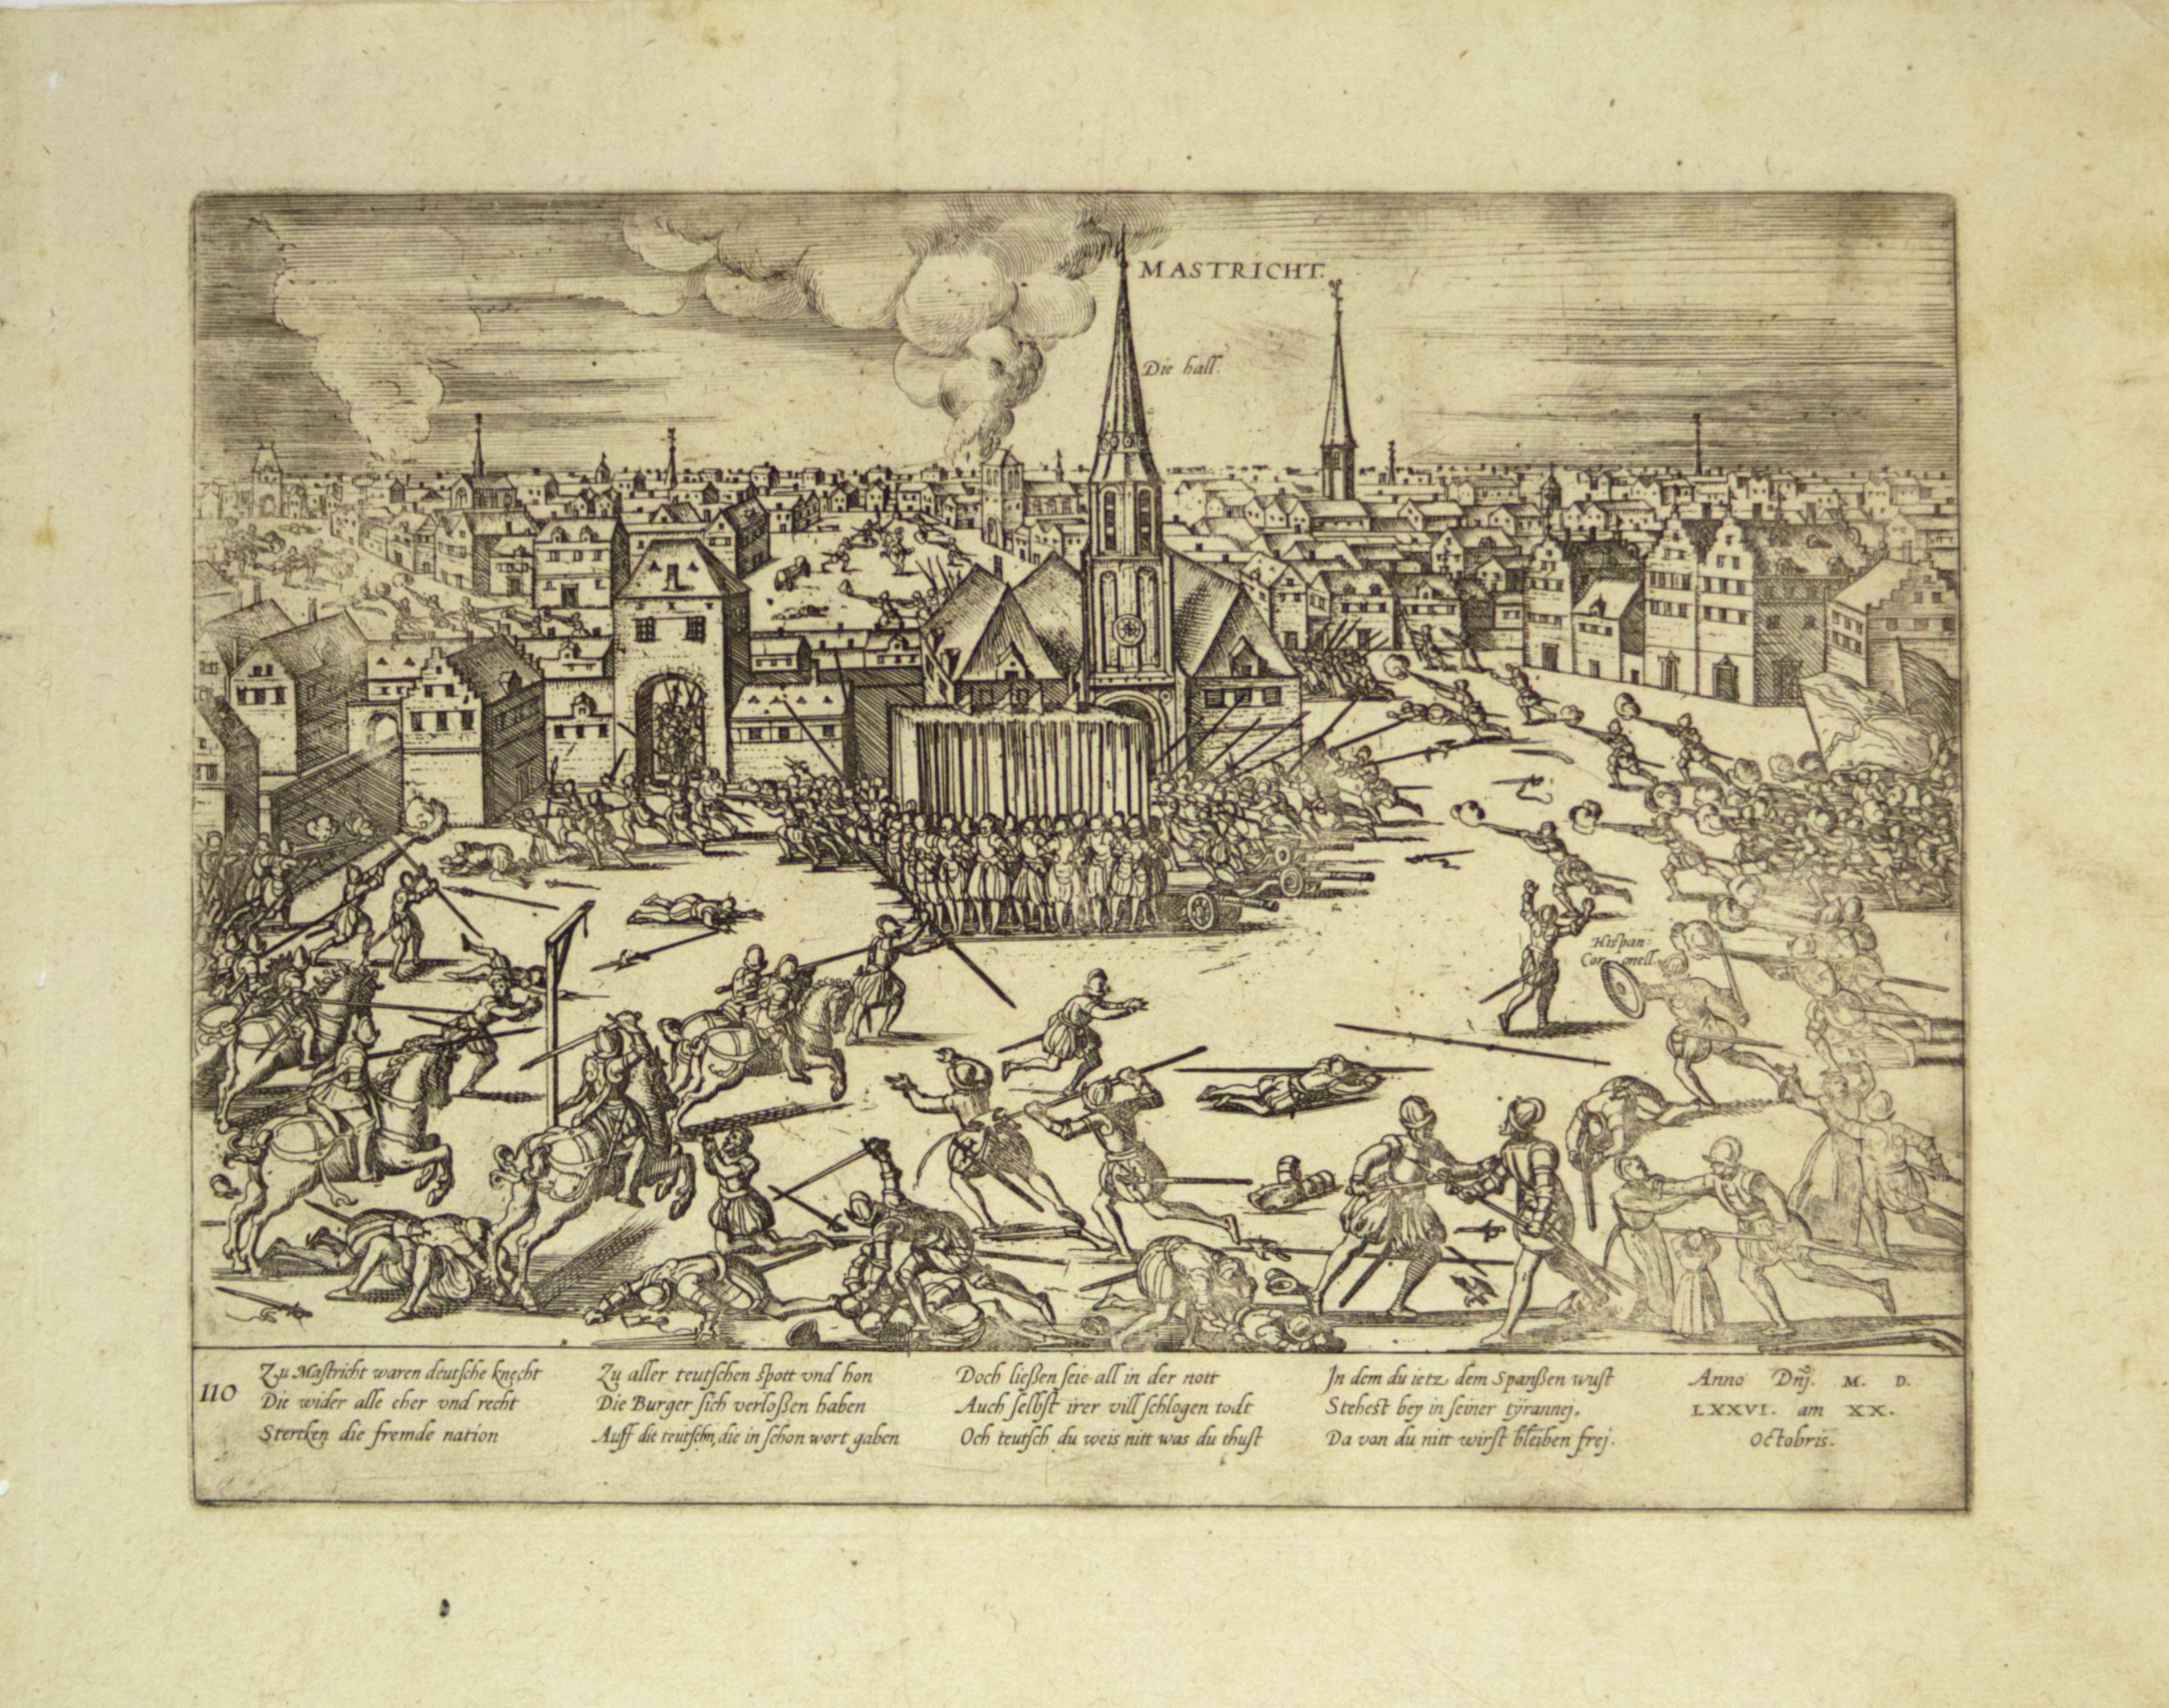 Spanische und deutsche Truppen morden in Maastricht im Oktober 1576 (Hogenberg) (Städtisches Museum Schloss Rheydt CC BY)